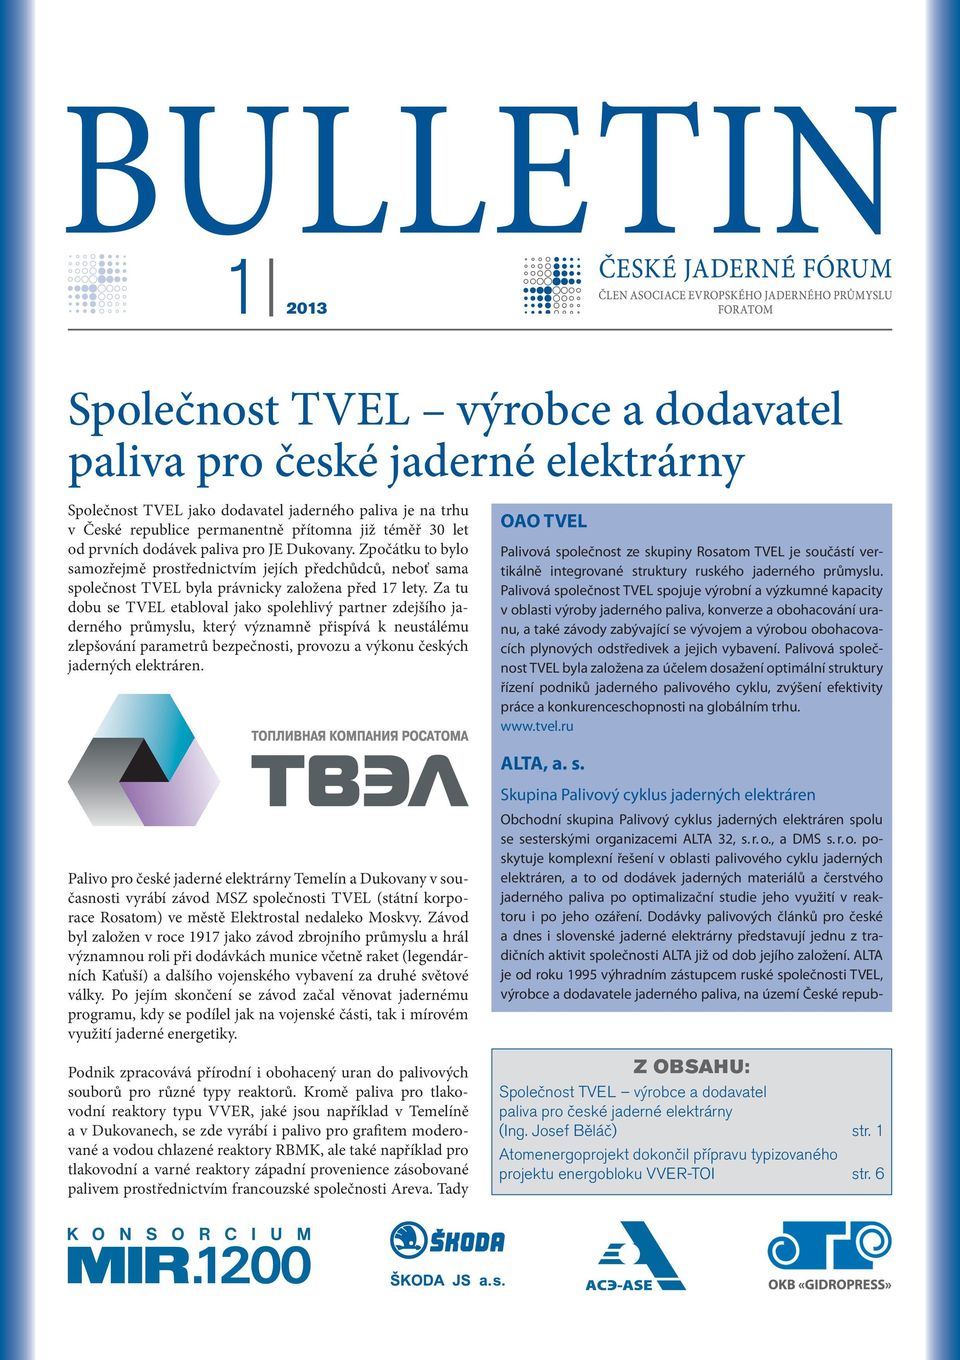 Za tu dobu se TVEL etabloval jako spolehlivý partner zdejšího jaderného průmyslu, který významně přispívá k neustálému zlepšování parametrů bezpečnosti, provozu a výkonu českých jaderných elektráren.